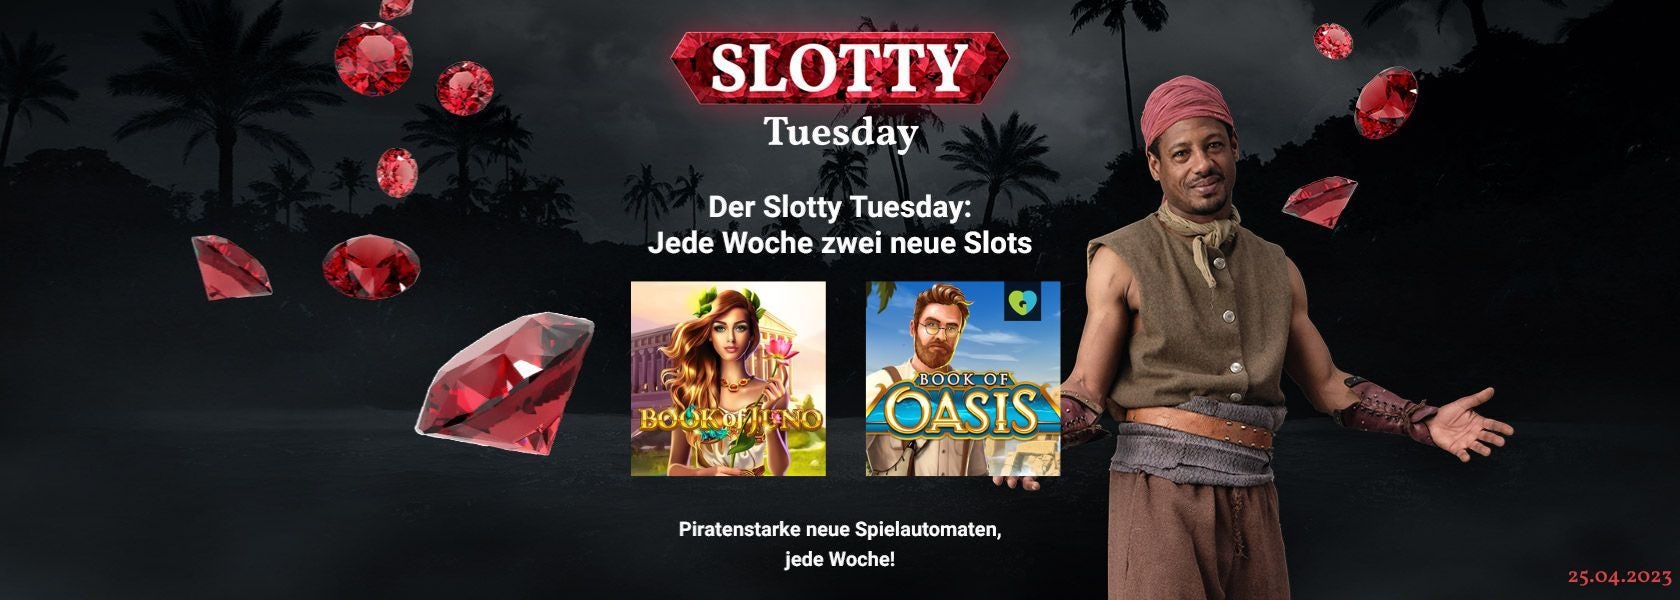 JPI-Header-Slotty-Tuesday-2504